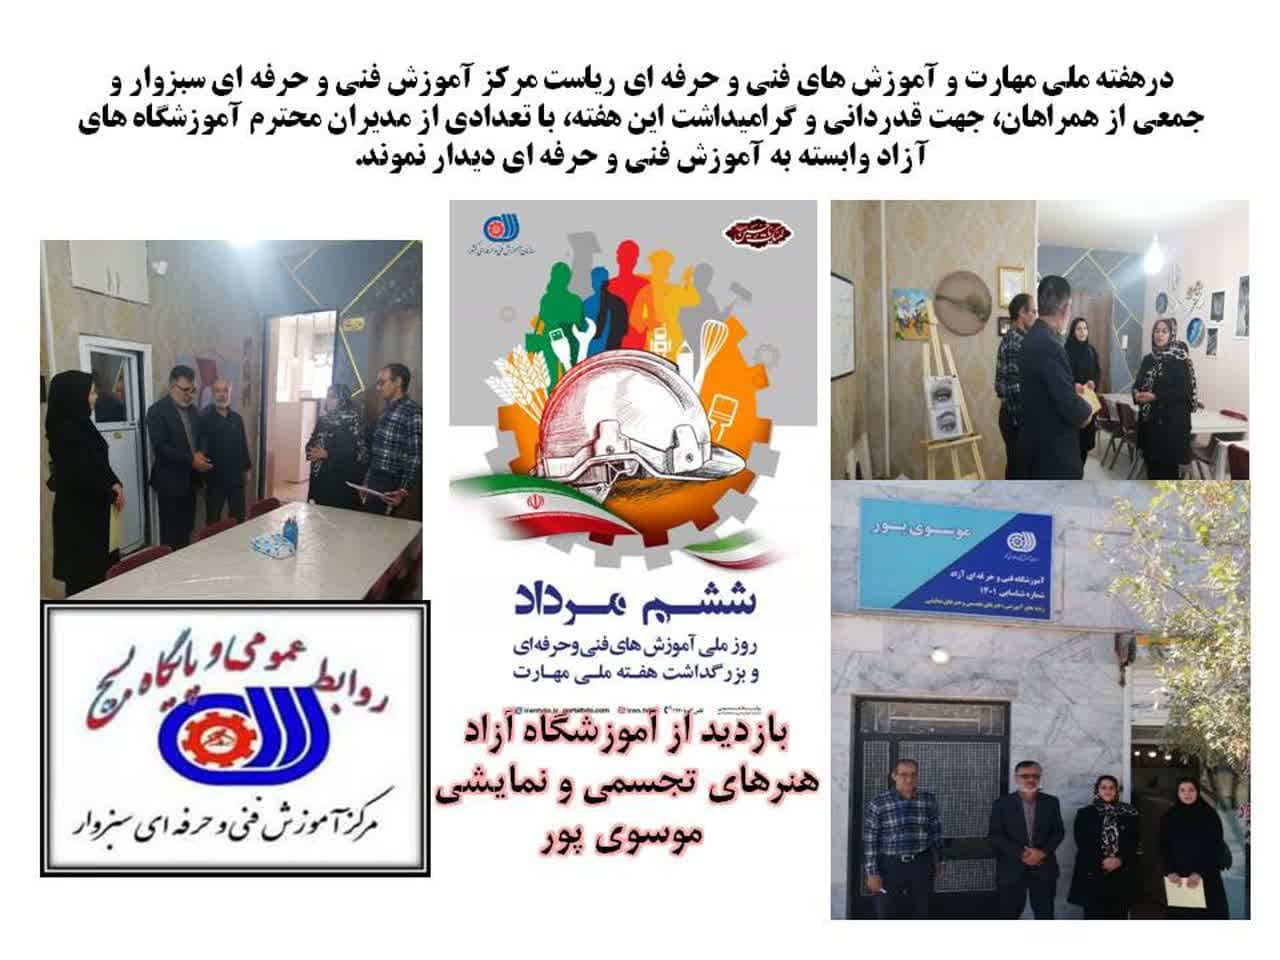 بازدید از آموزشگاه آزاد  موسوی پور در هفته ملی مهارت و آموزش های فنی و حرفه در هفته ملی مهارت